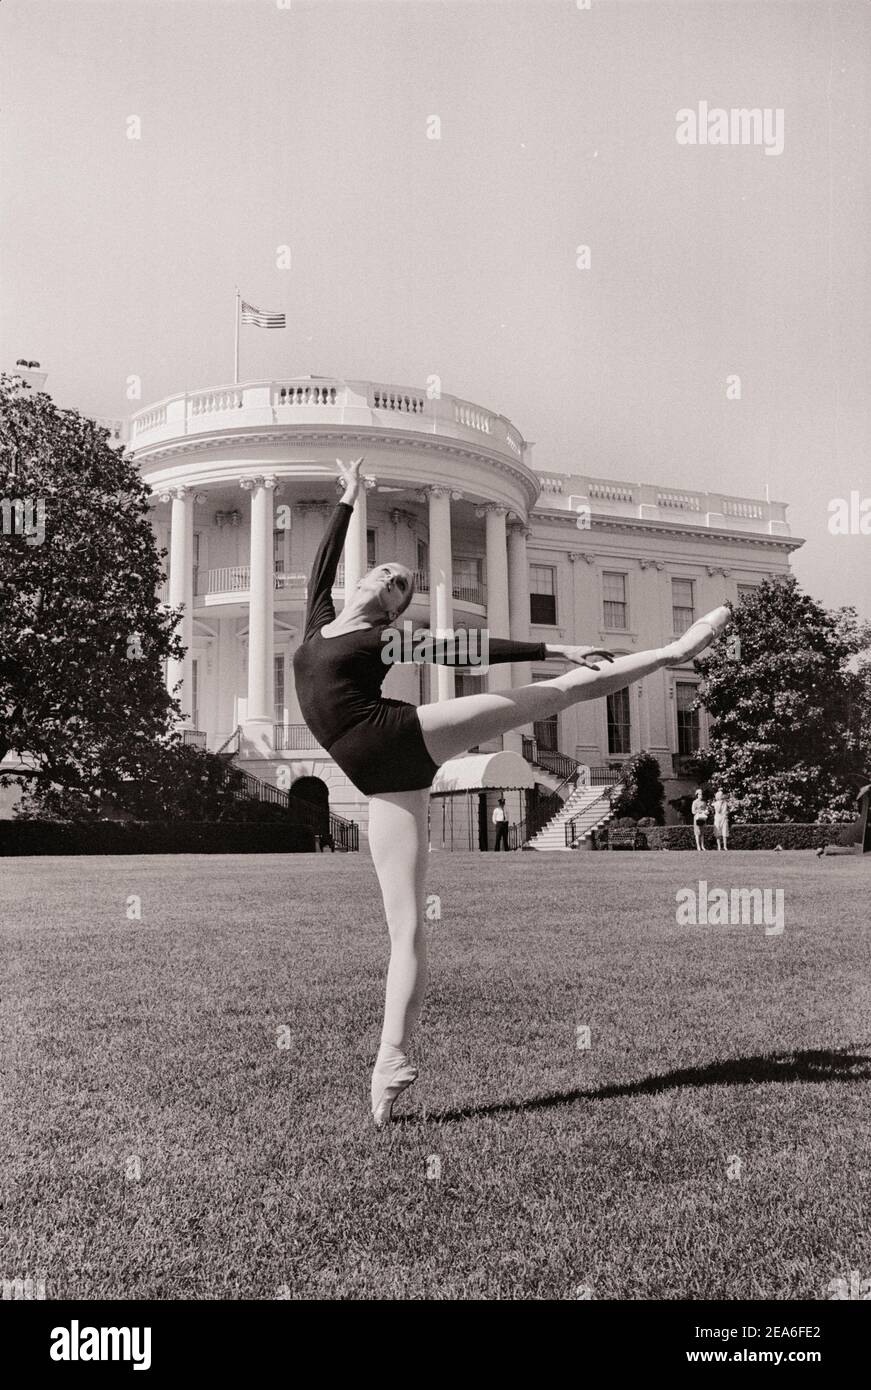 Foto d'epoca del White House Art Festival, prove. Ballerina danzante di fronte alla Casa Bianca. Washington D.C., Stati Uniti. 13 giugno 1965 Foto Stock